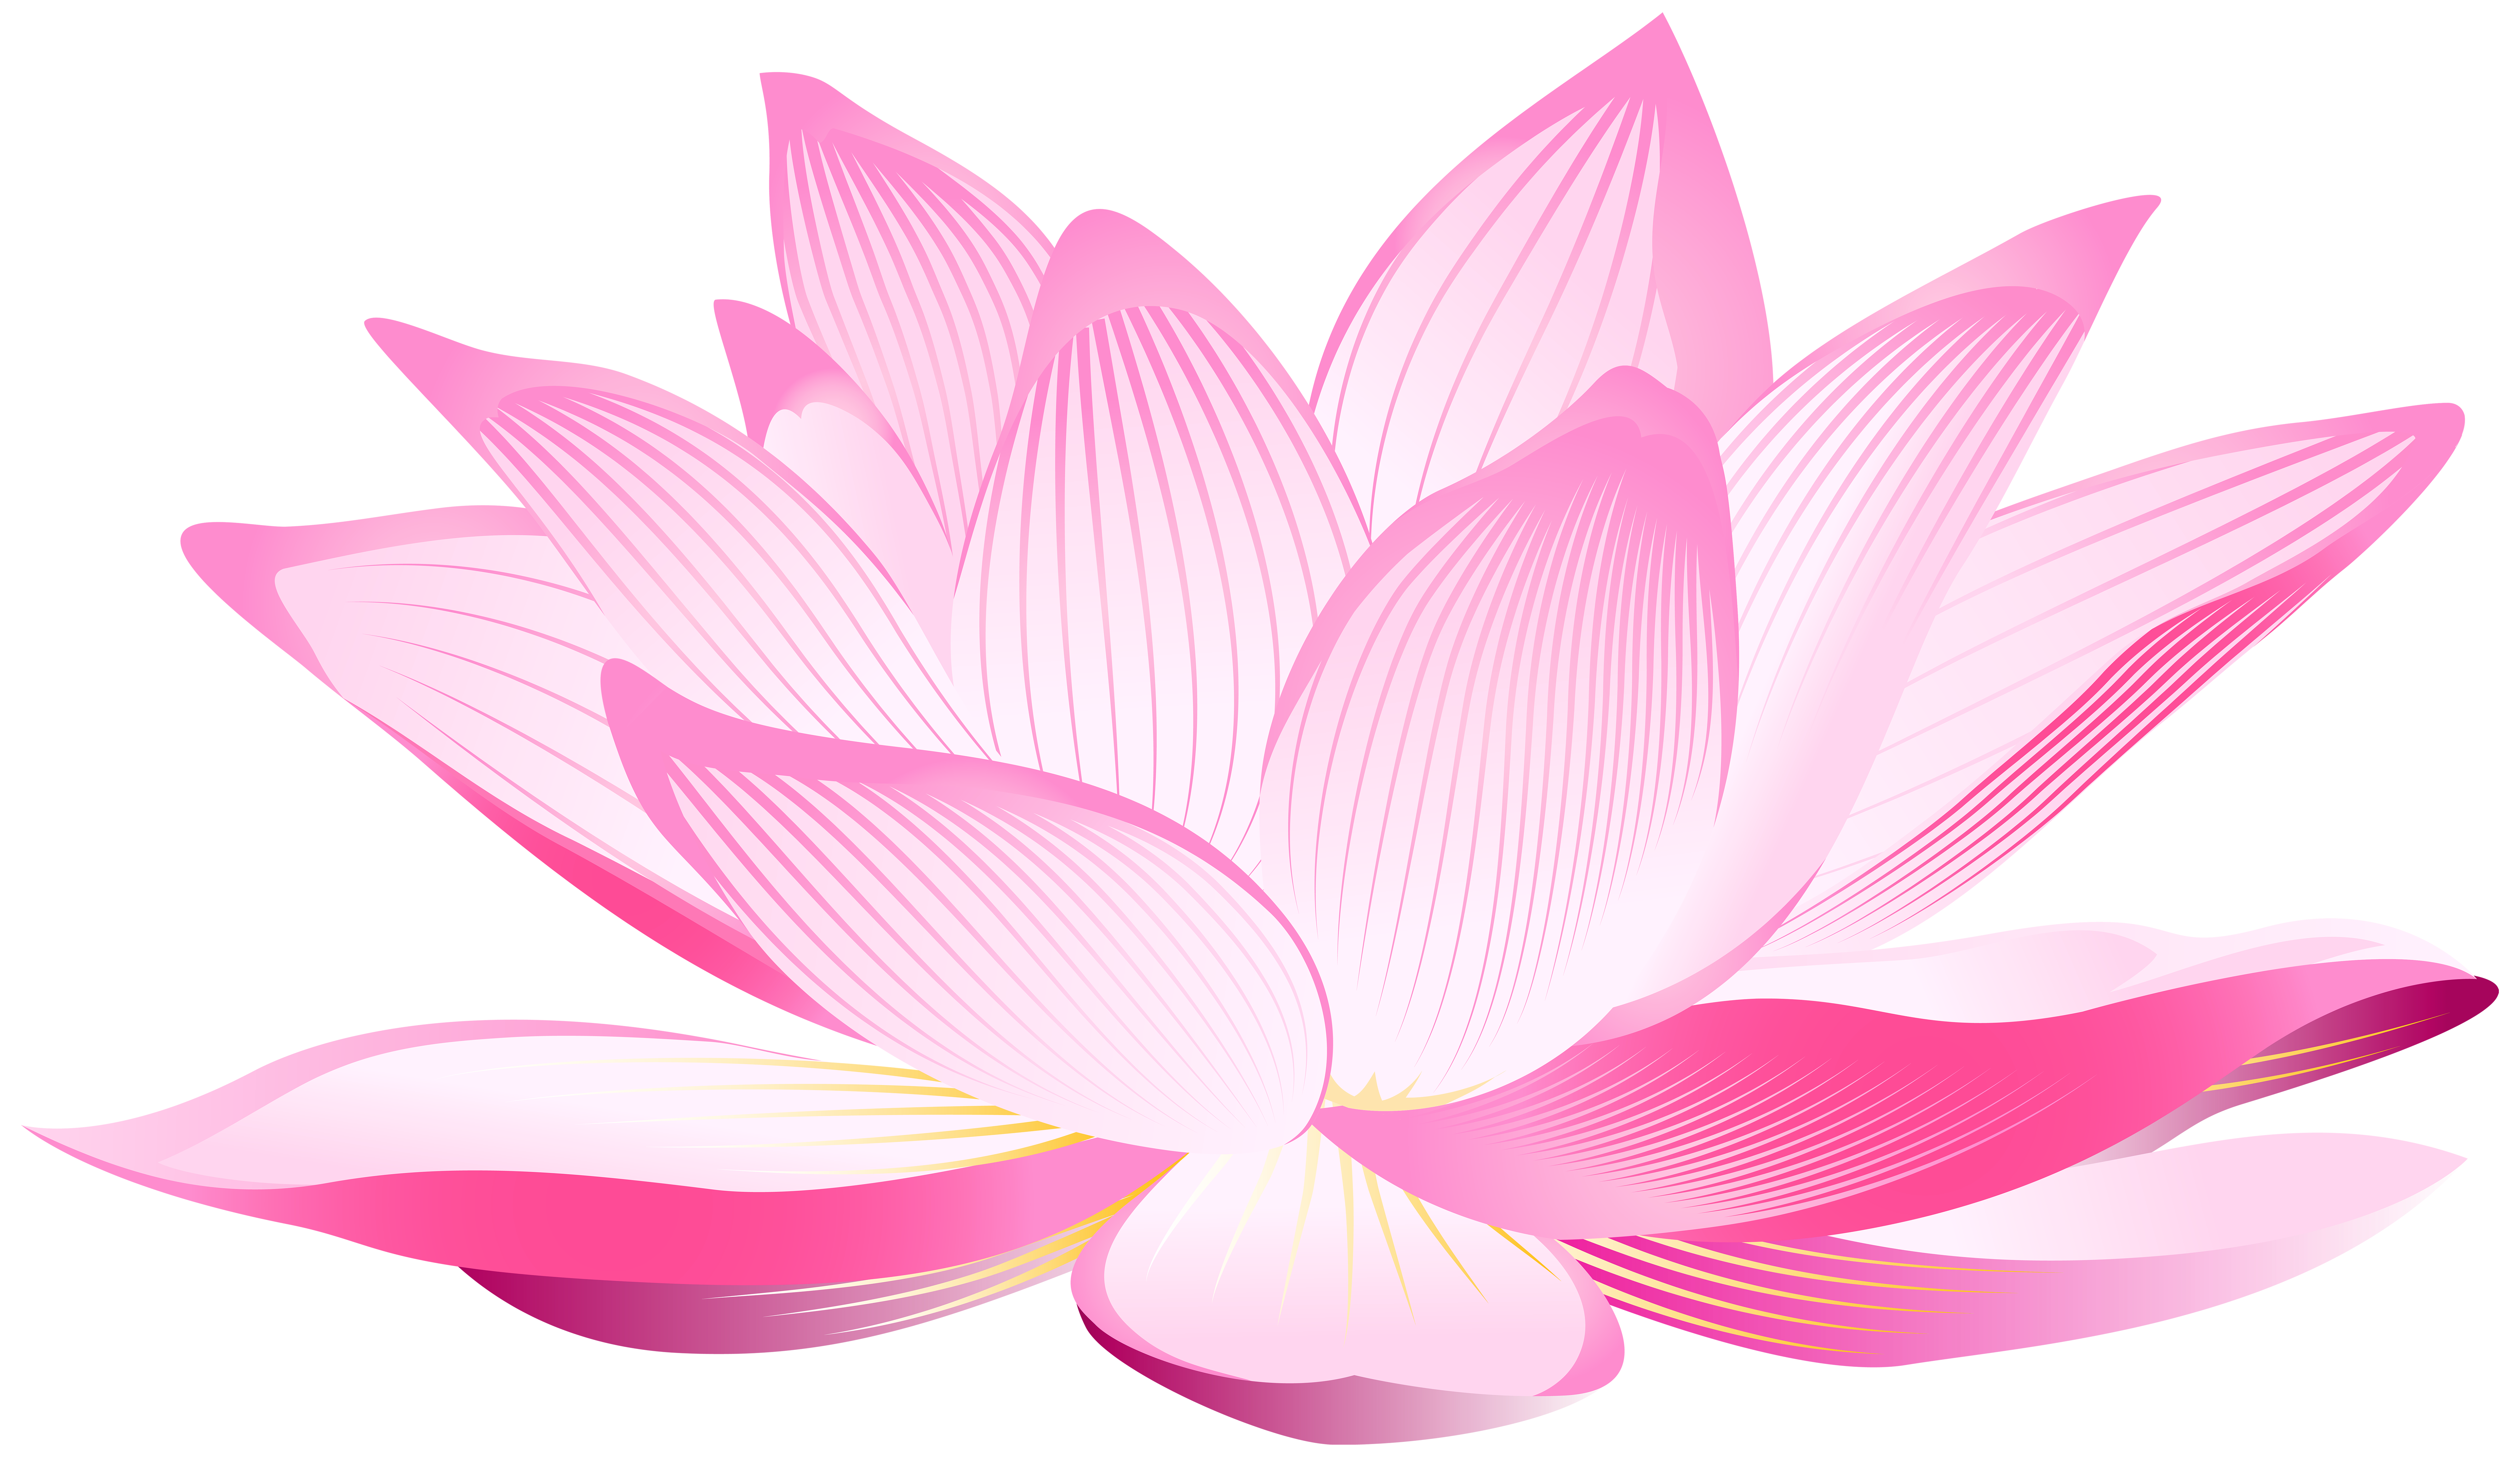 lotus flower illustration free download